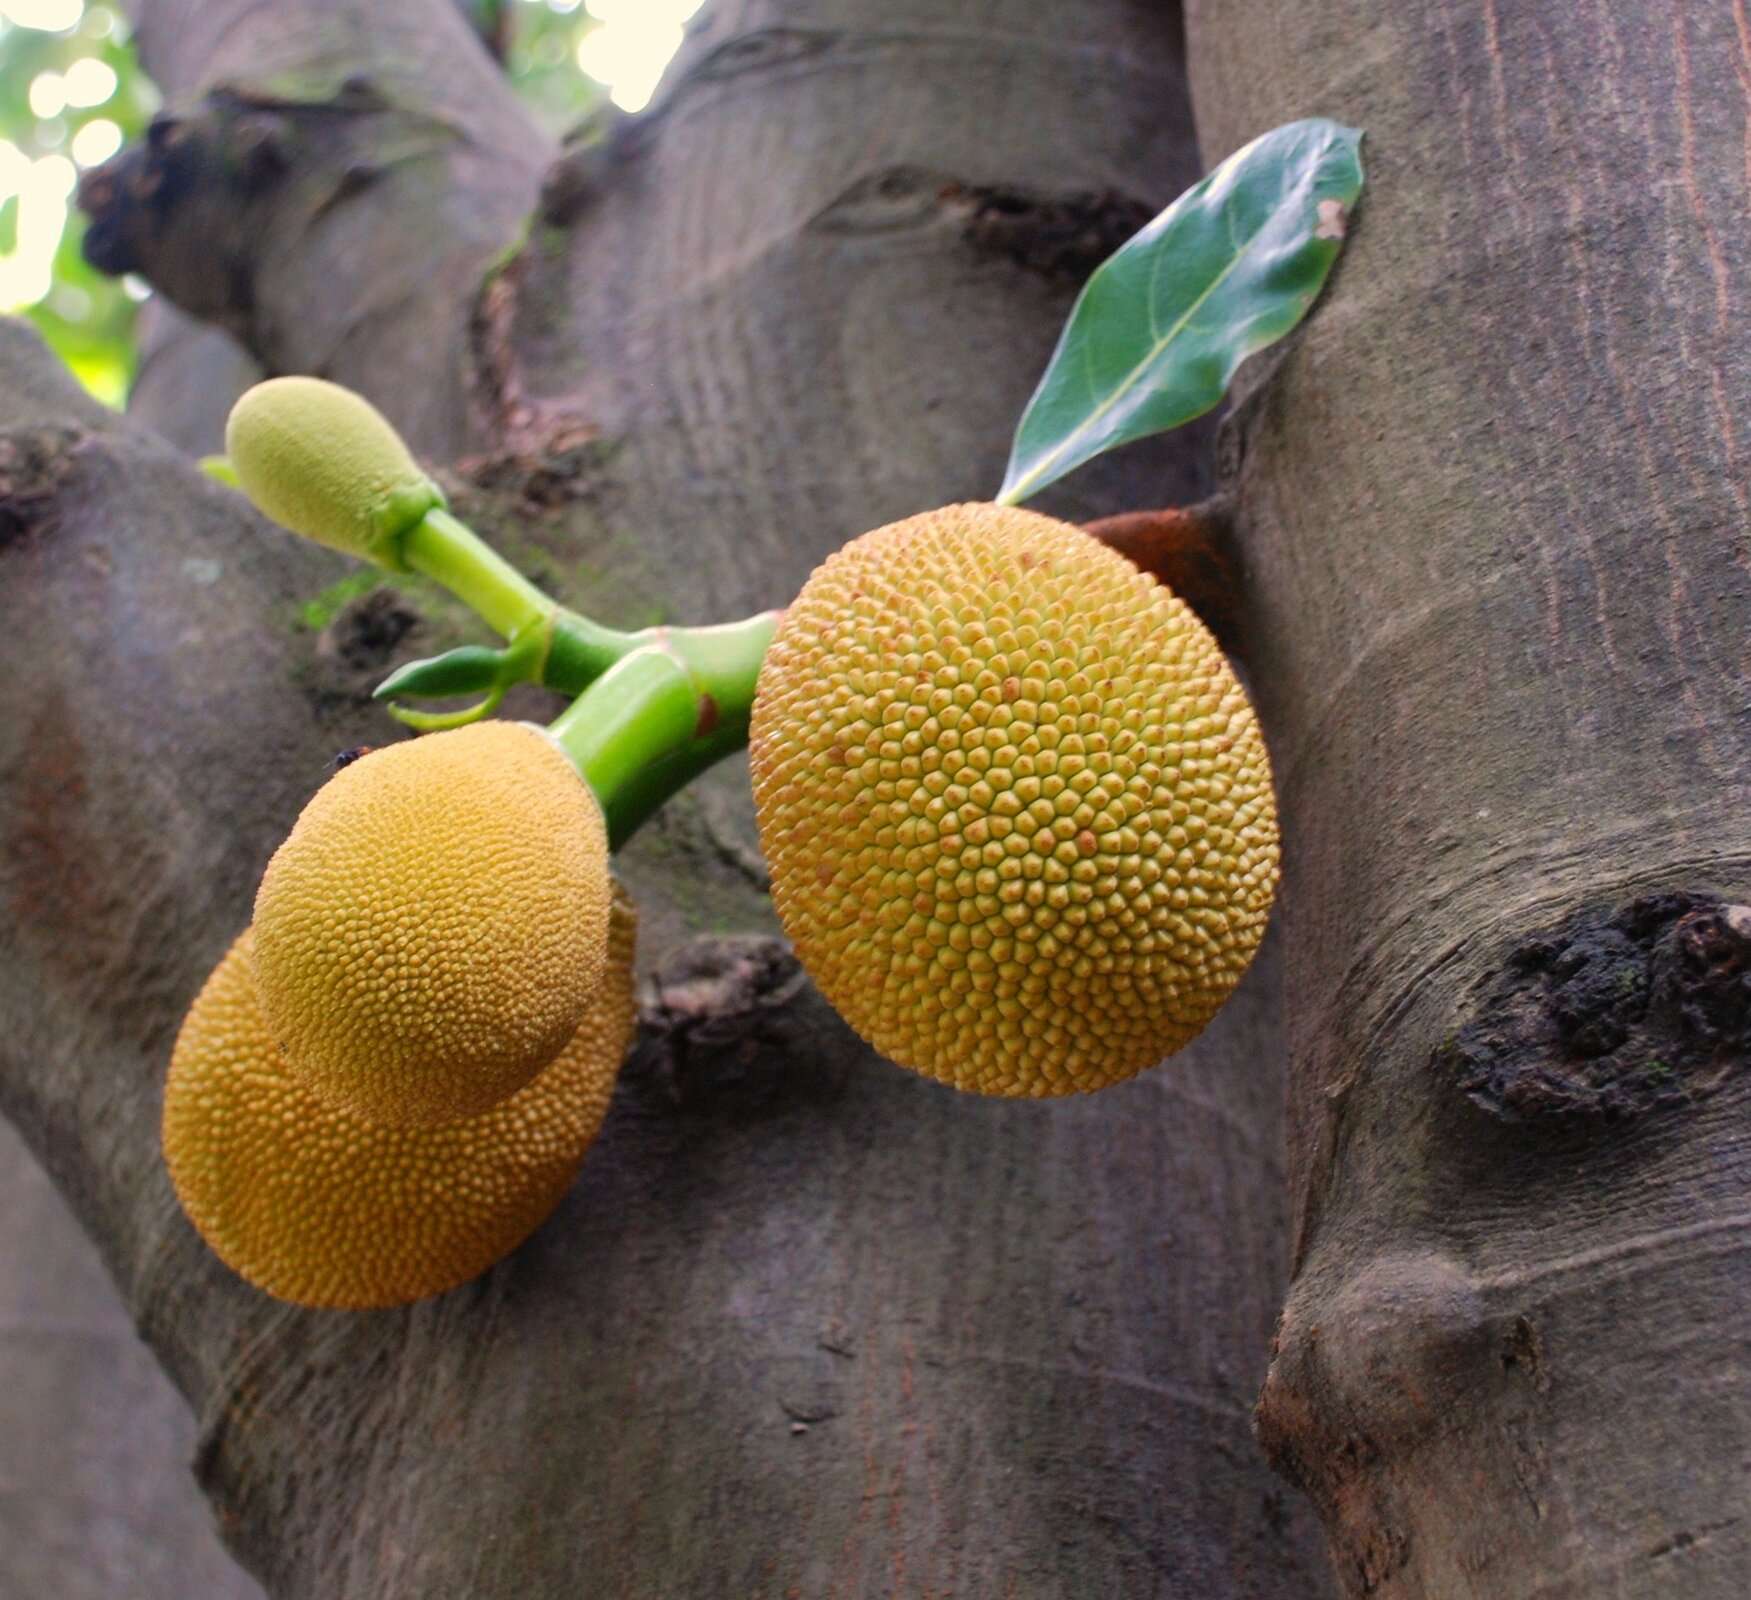 Fotografia z prawej przedstawia trzy brązowożółte, kolczaste owoce, wyrastające z szarego pnia drzewa chlebowego. Nad nimi mały owoc i zielone liście.